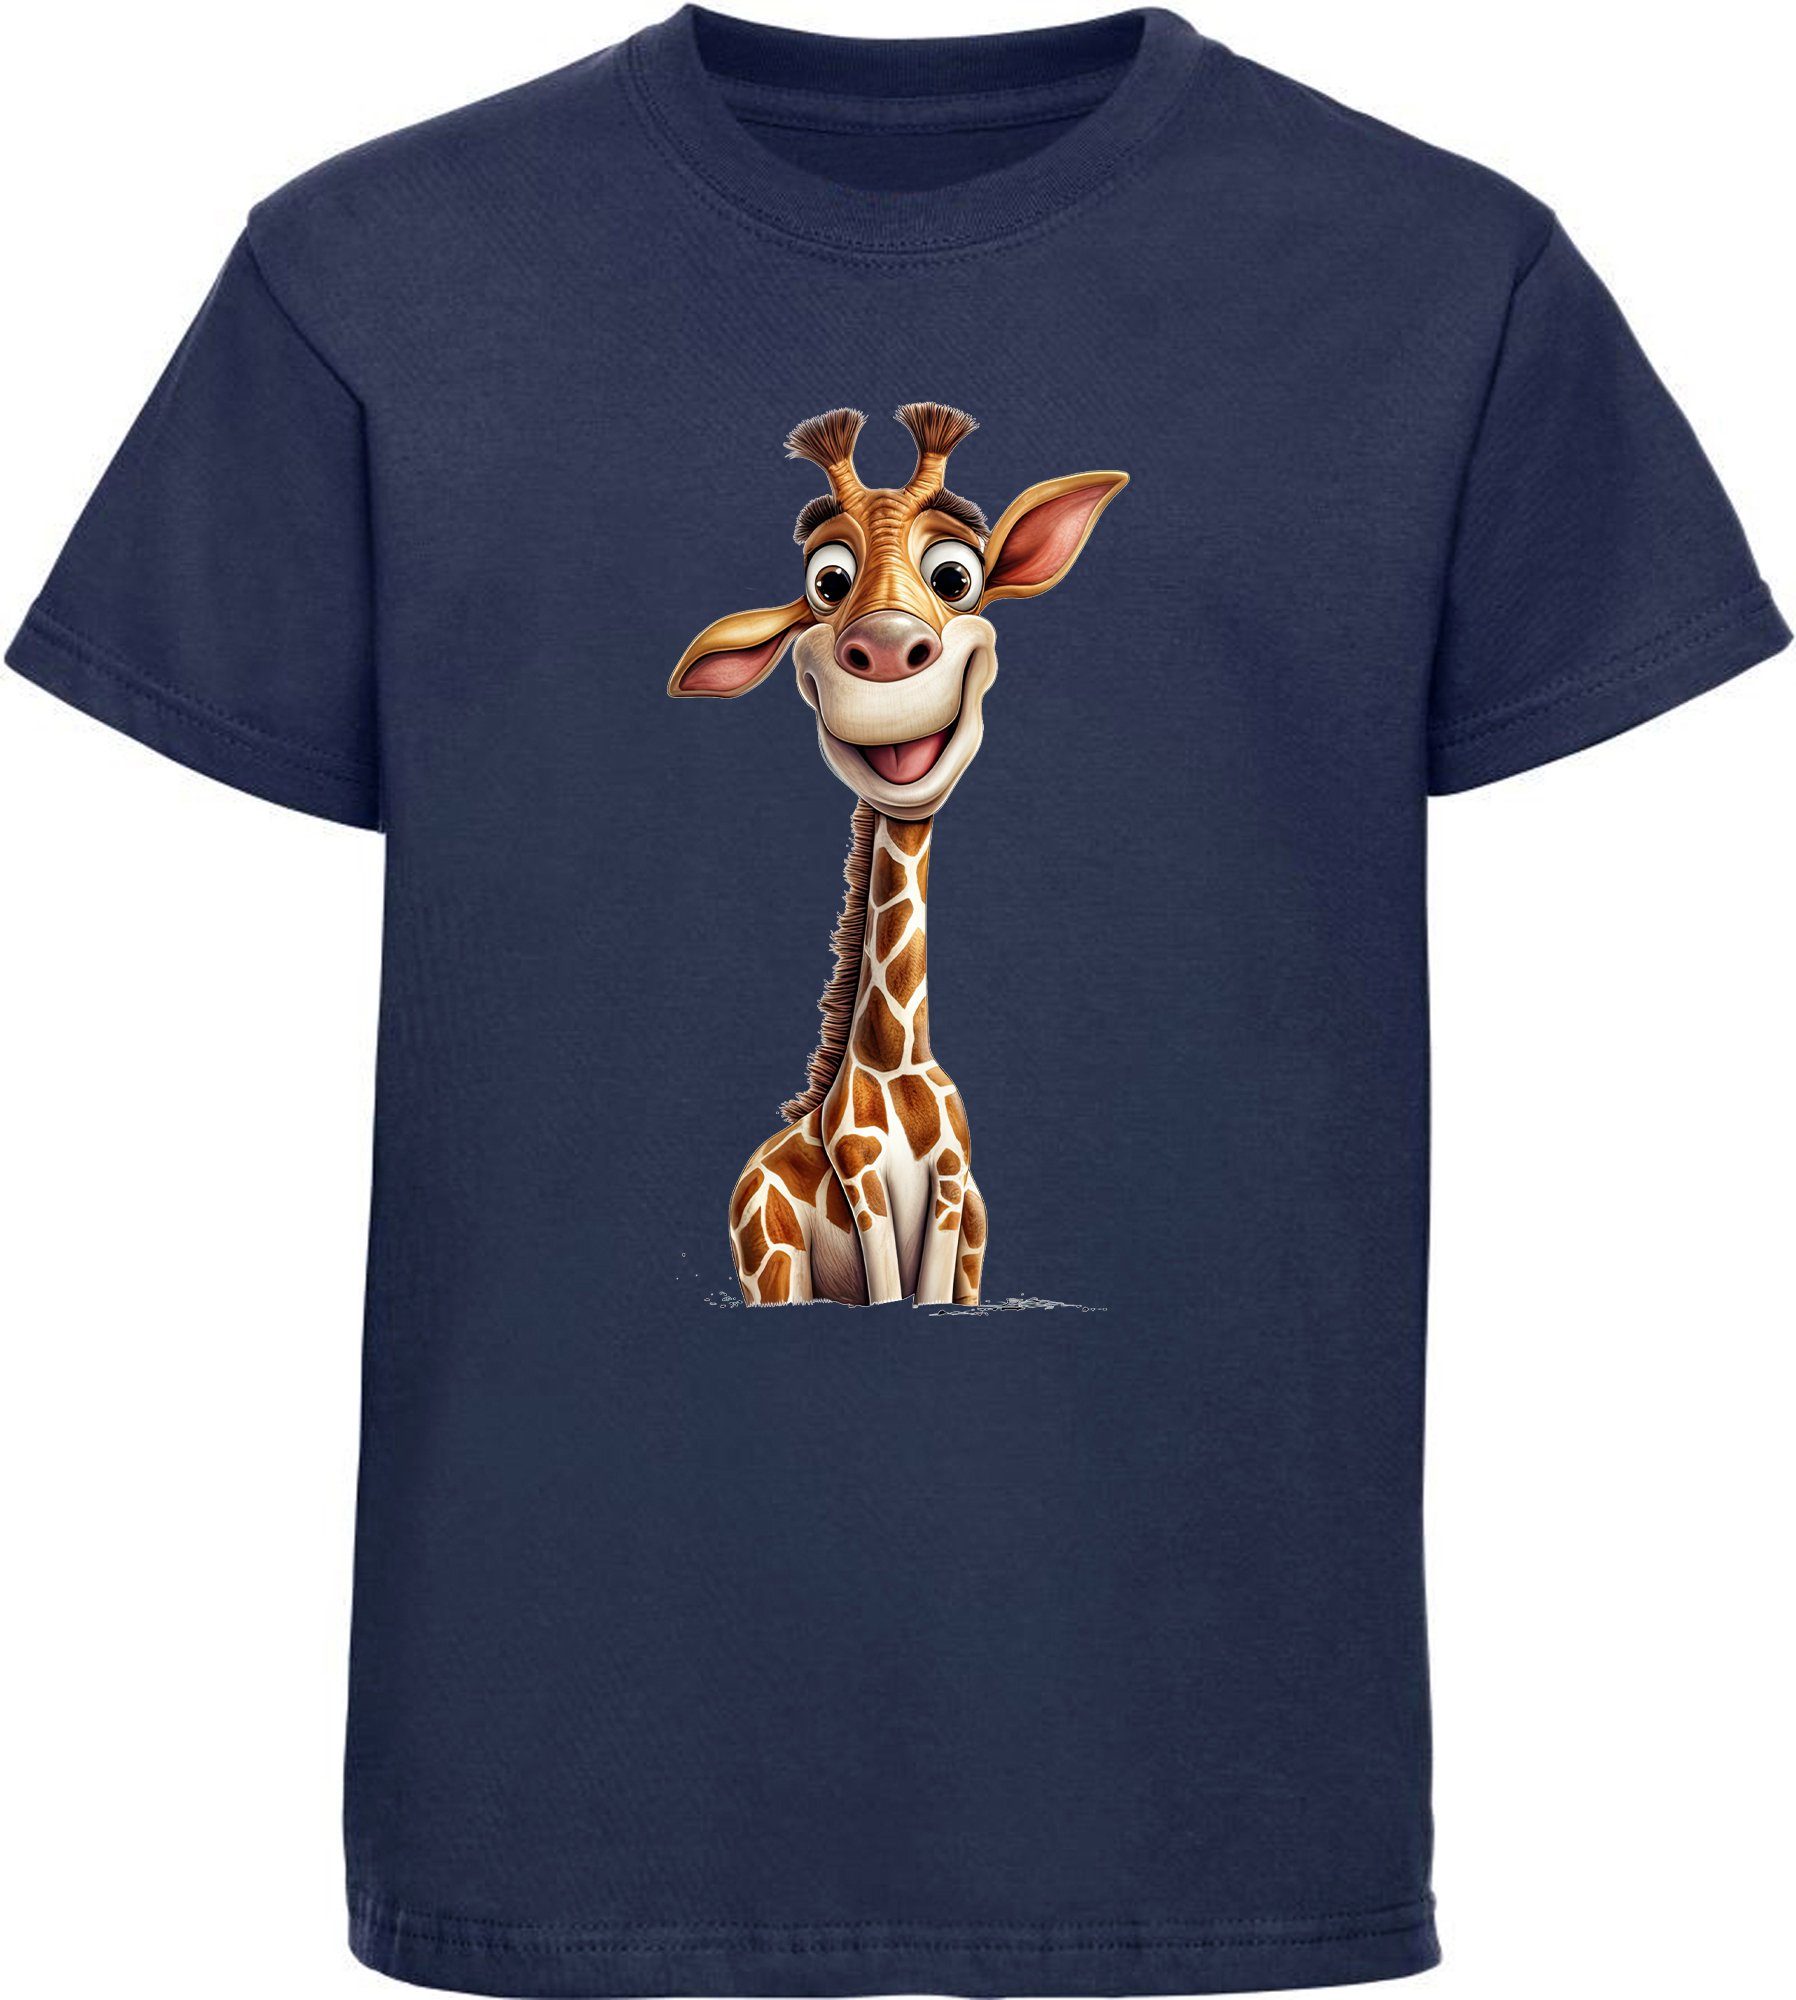 MyDesign24 T-Shirt Kinder Shirt Wildtier navy Aufdruck, Giraffe Baumwollshirt Baby bedruckt i273 - blau mit Print